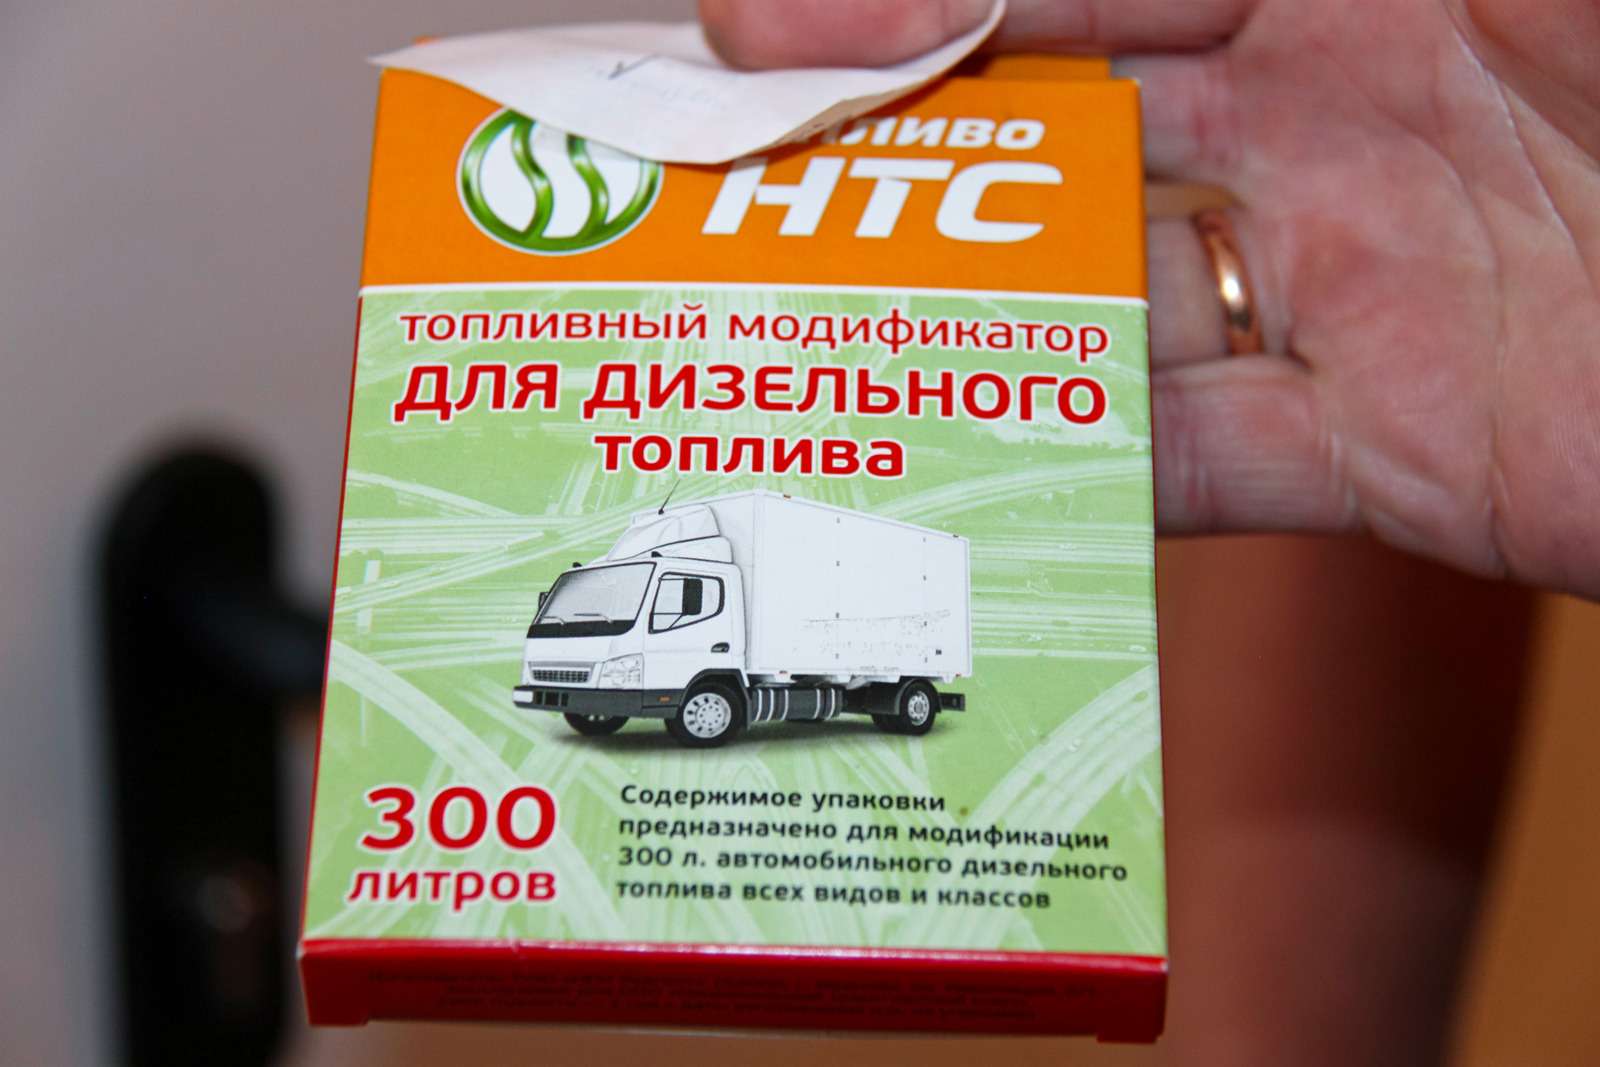  На другой АЗС это топливо продавали в виде «сухпая» – присадки ДТ‑300. За 319 рублей предлагалось самому довести топливо до кондиции.